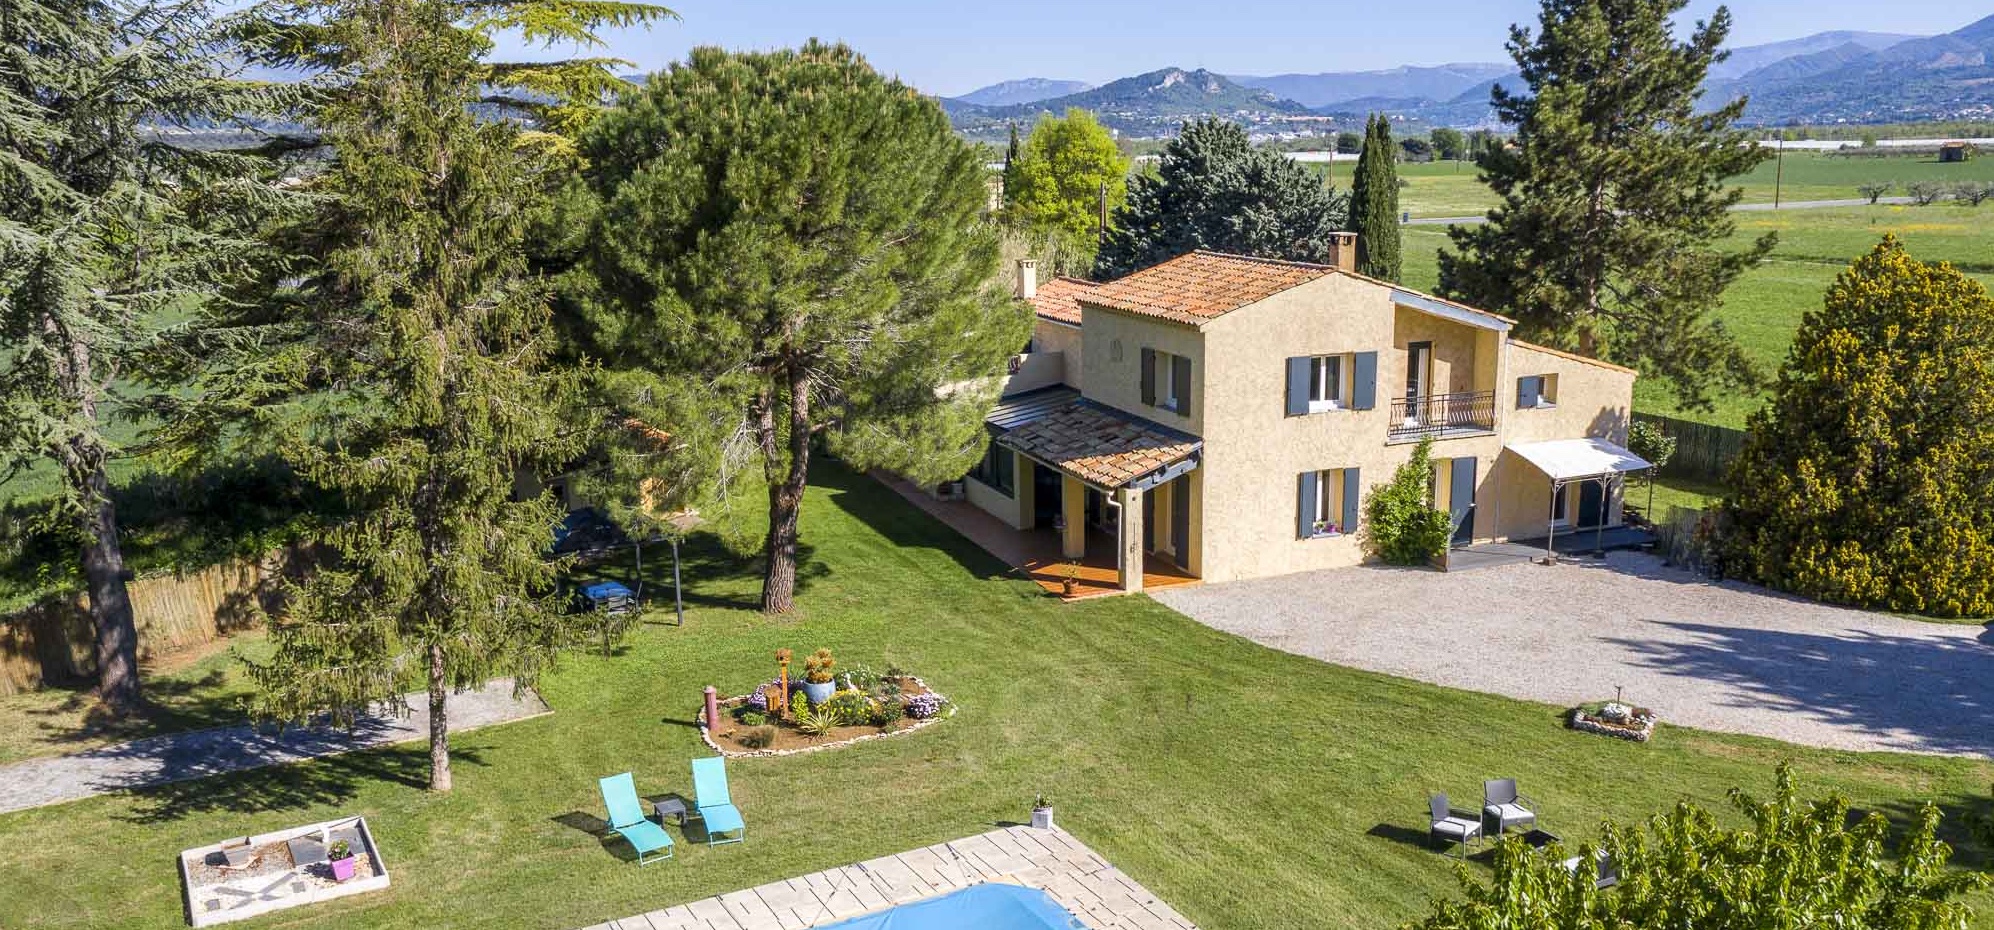 Photographie immobilière d'une villa avec piscine dans les Alpes de Haute Provence au printemps.